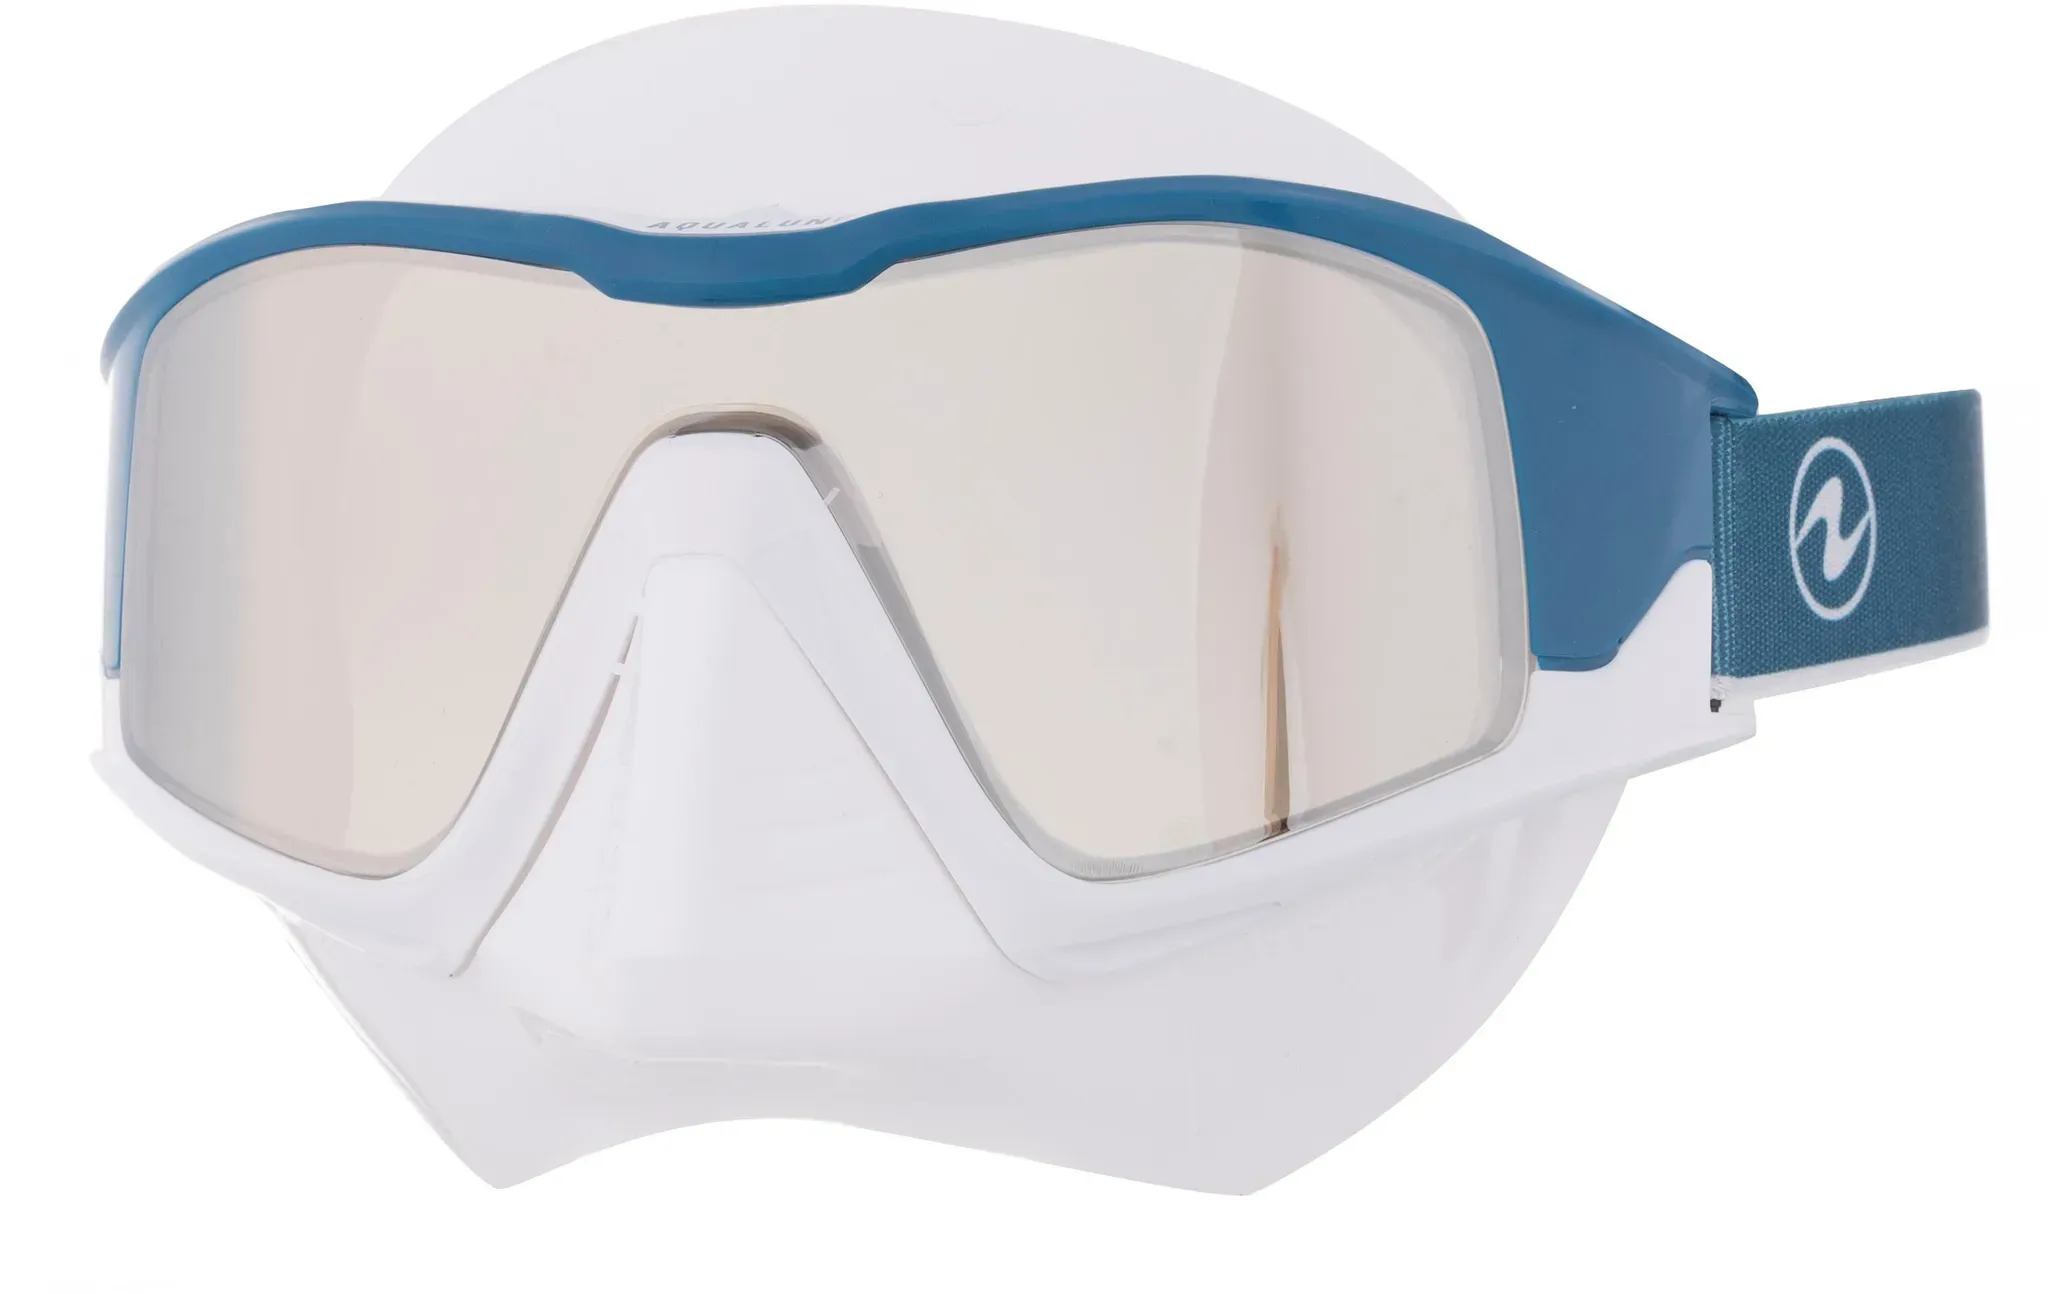 AQUA LUNG Vita Brille in white-petrol, Größe Einheitsgröße - weiß